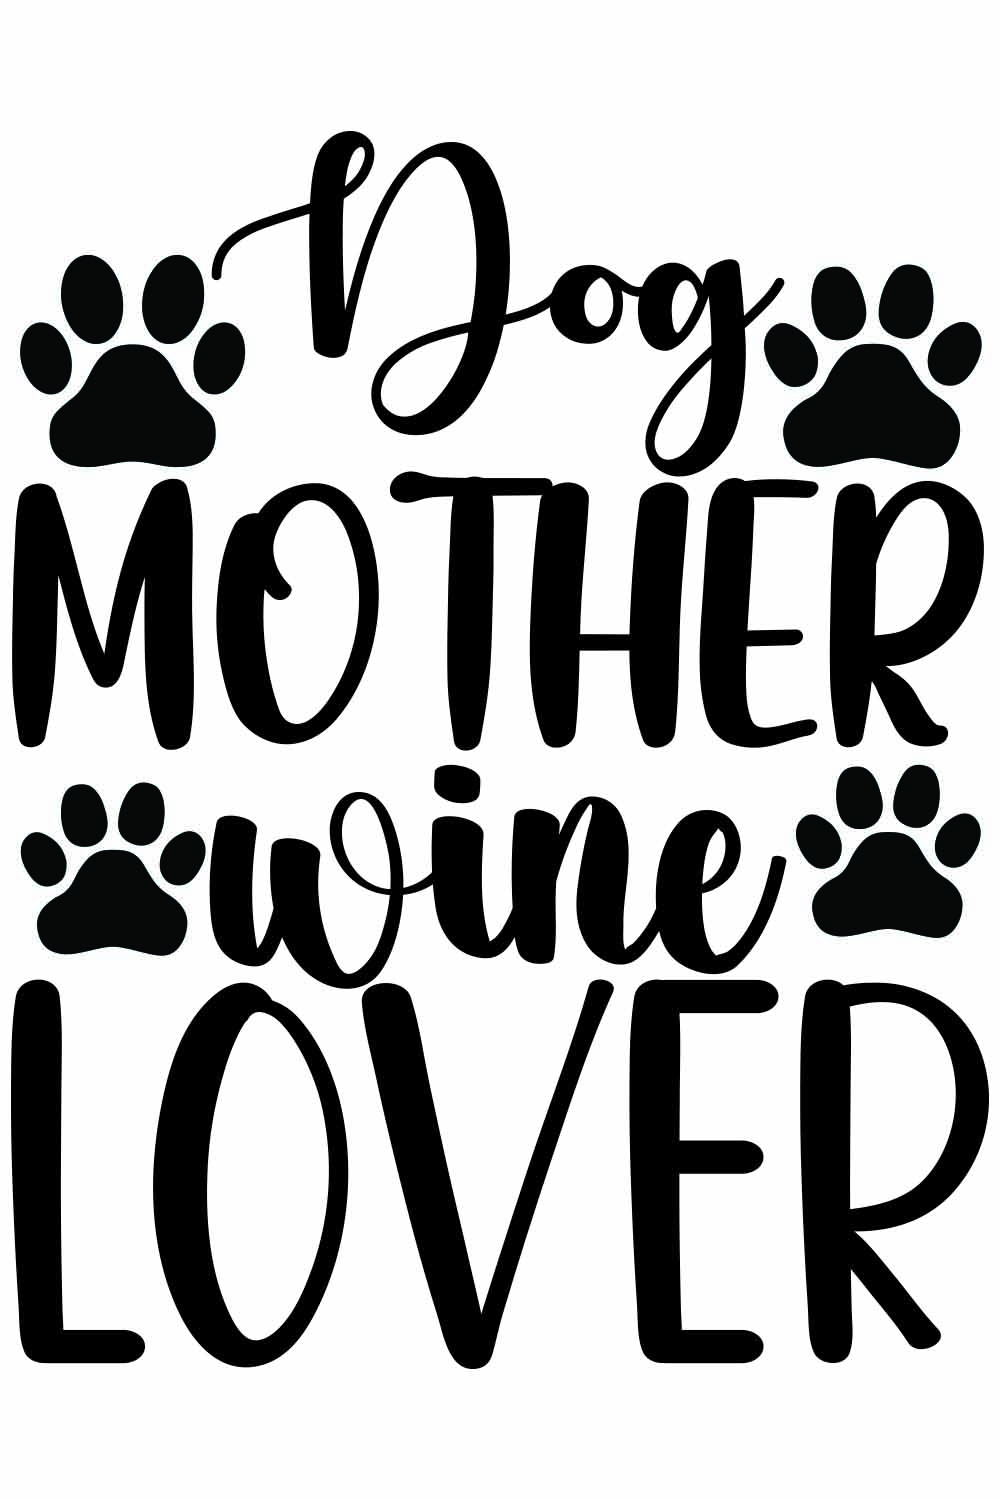 Dog Mother Wine lover SVG Designs pinterest preview image.